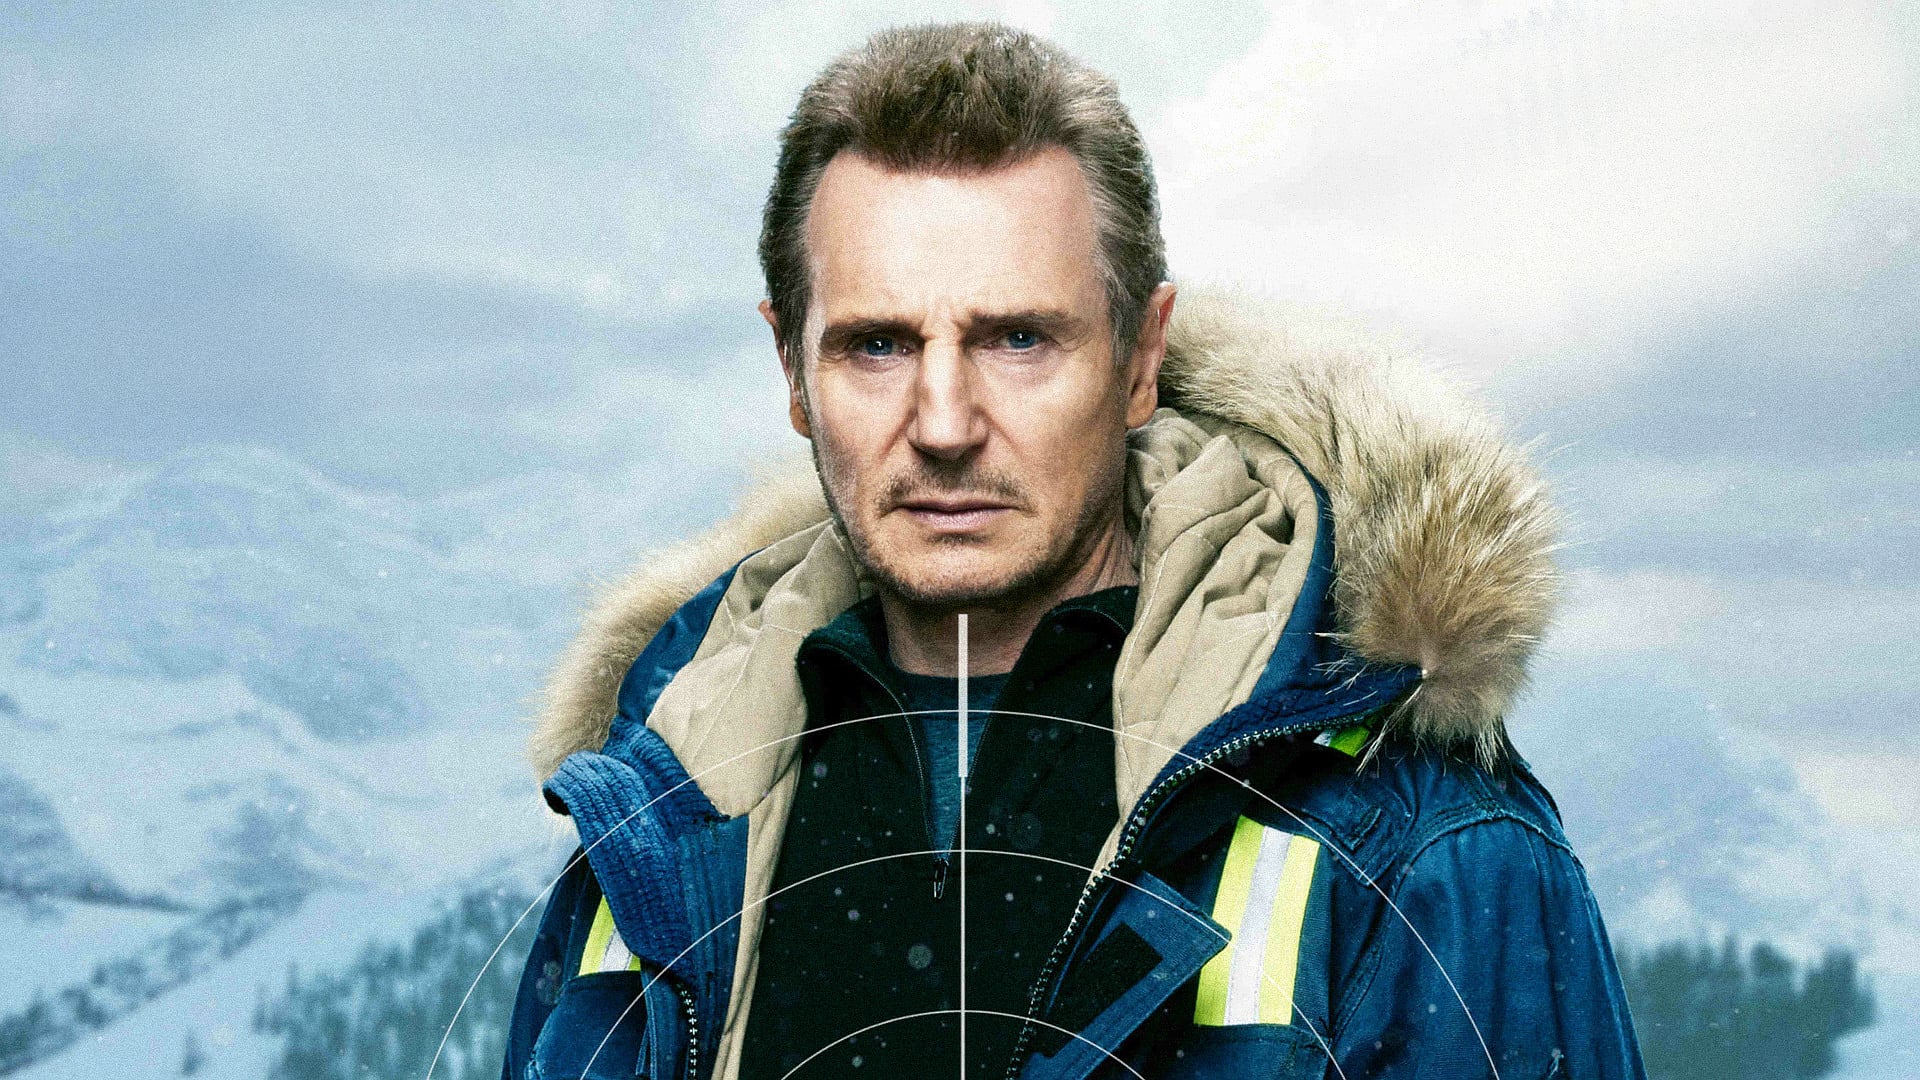 Se estrena “Venganza”, la nueva película de acción de Liam Neeson IMPULSO